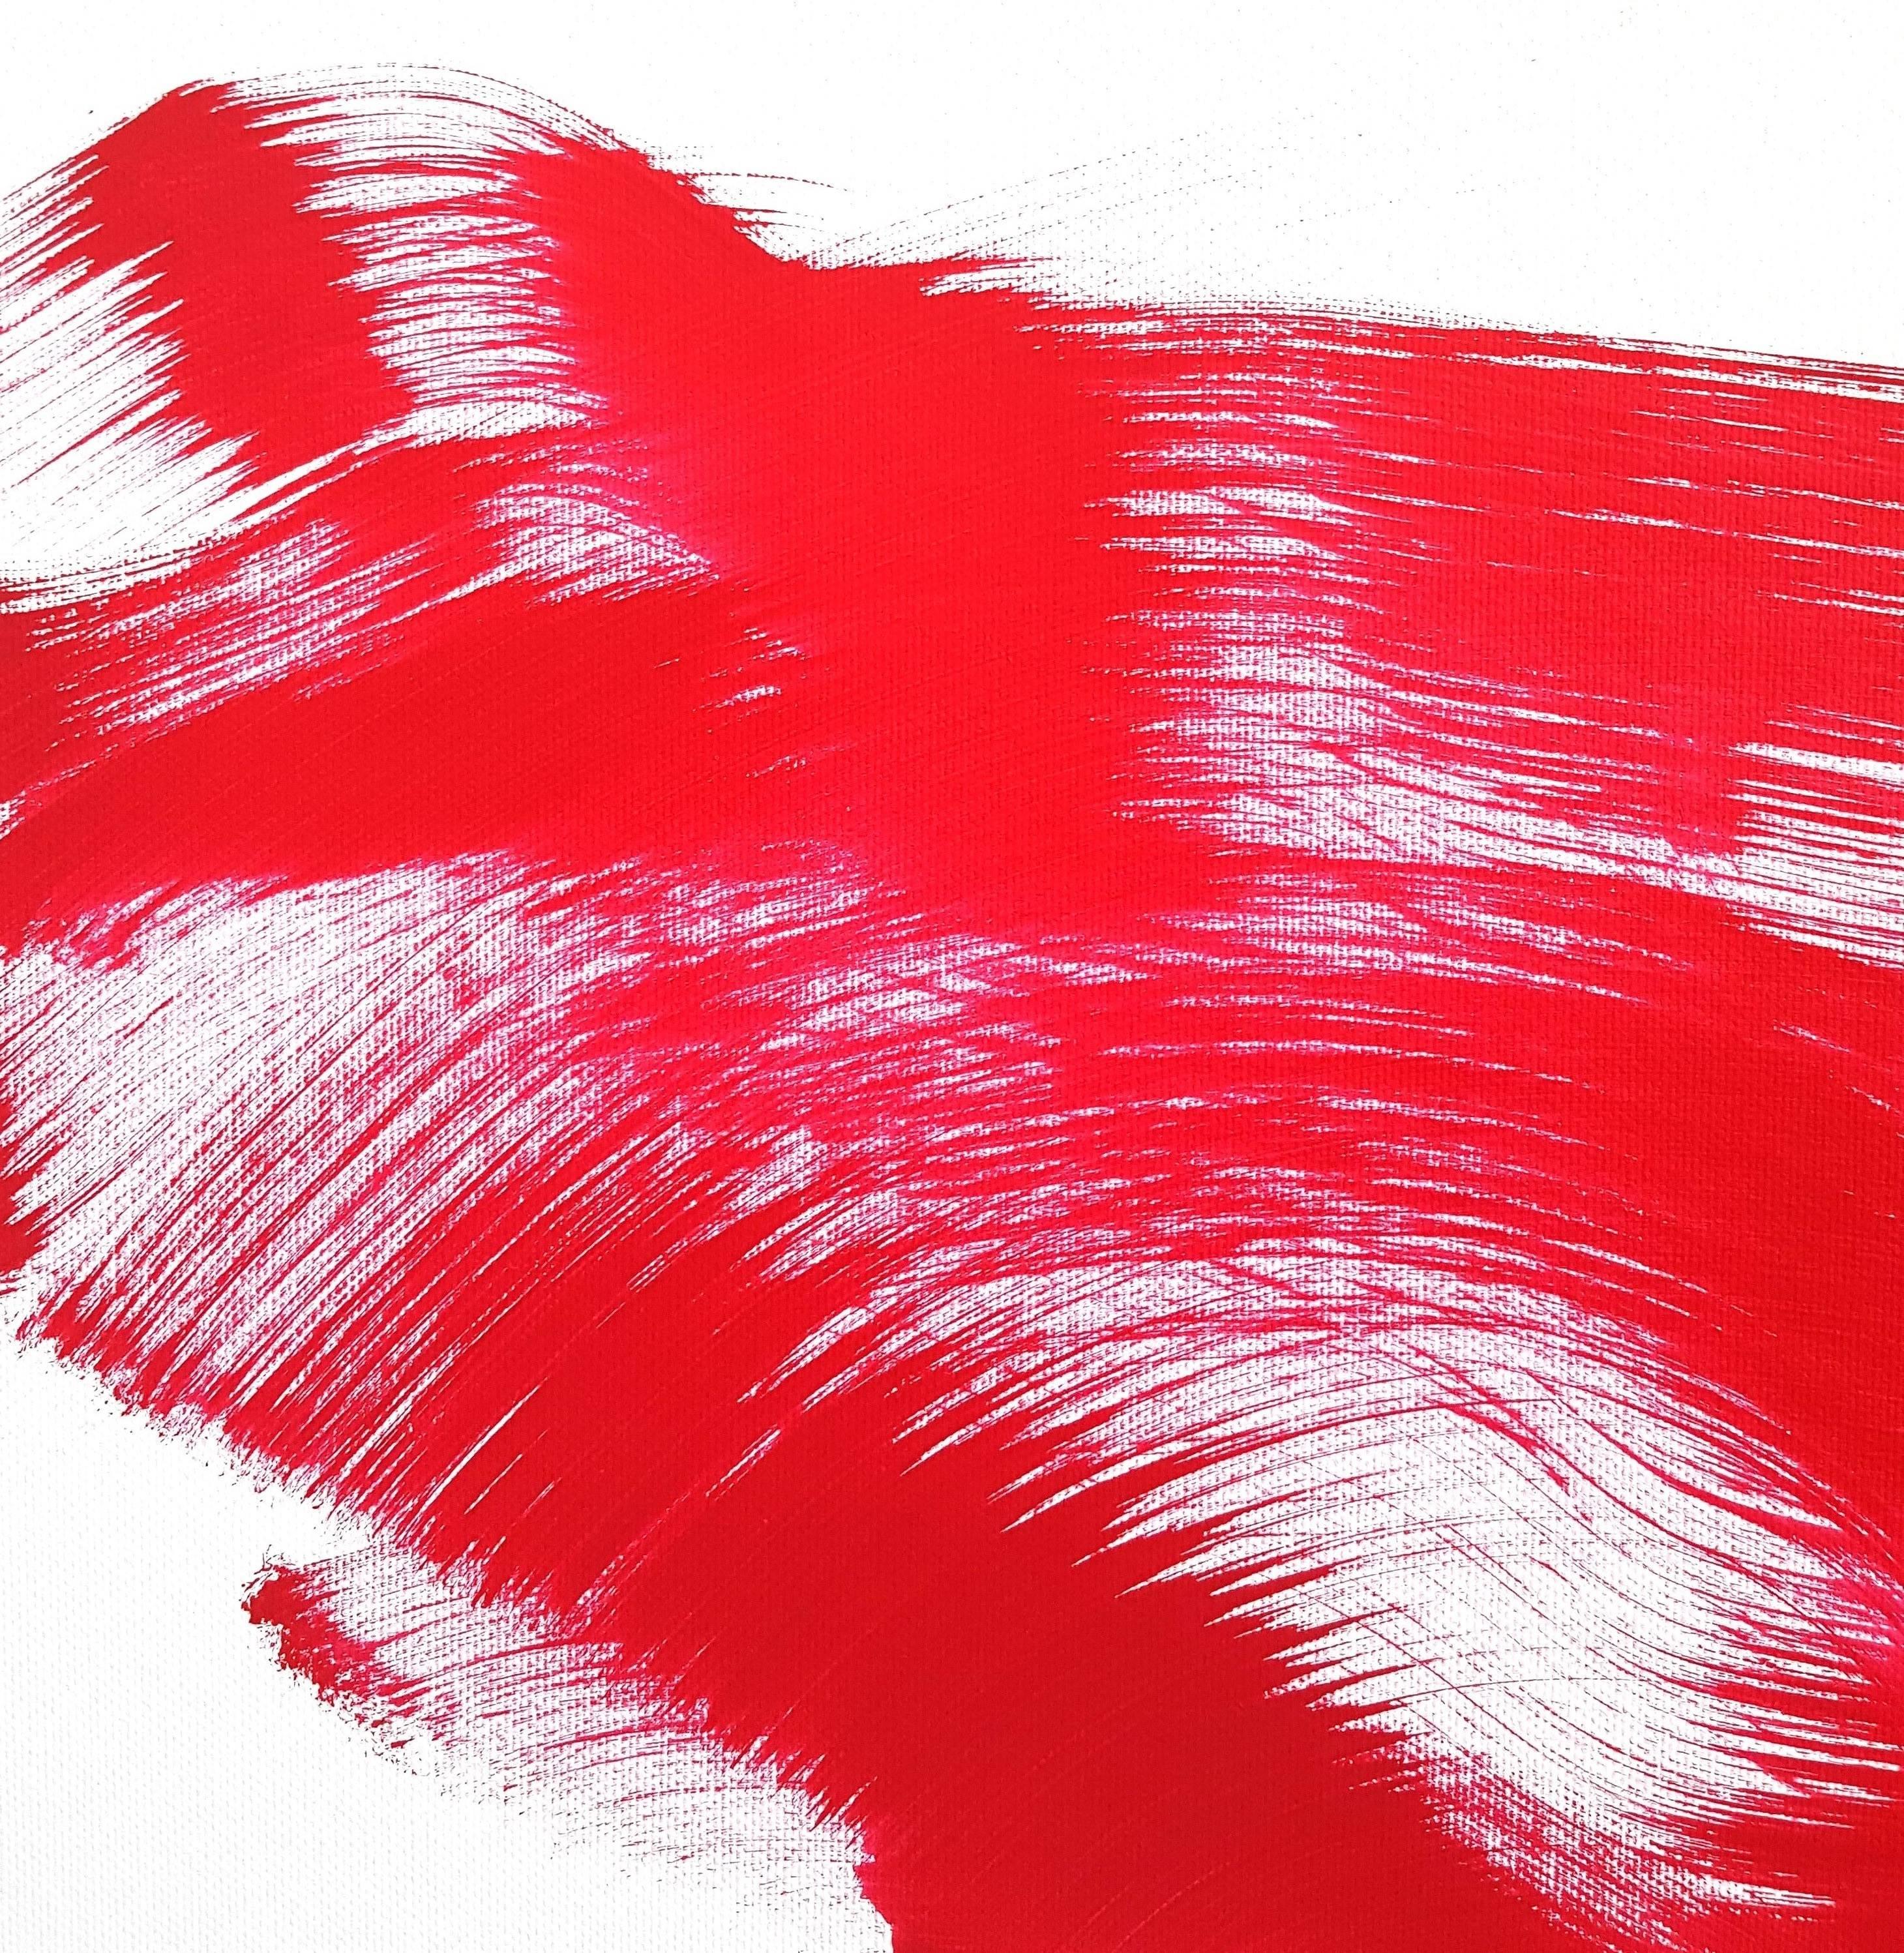 The Red Dress 5 - Peinture à l'huile figurative abstraite originale et encadrée de style dynamique rouge  - Expressionnisme abstrait Painting par Bettina Mauel